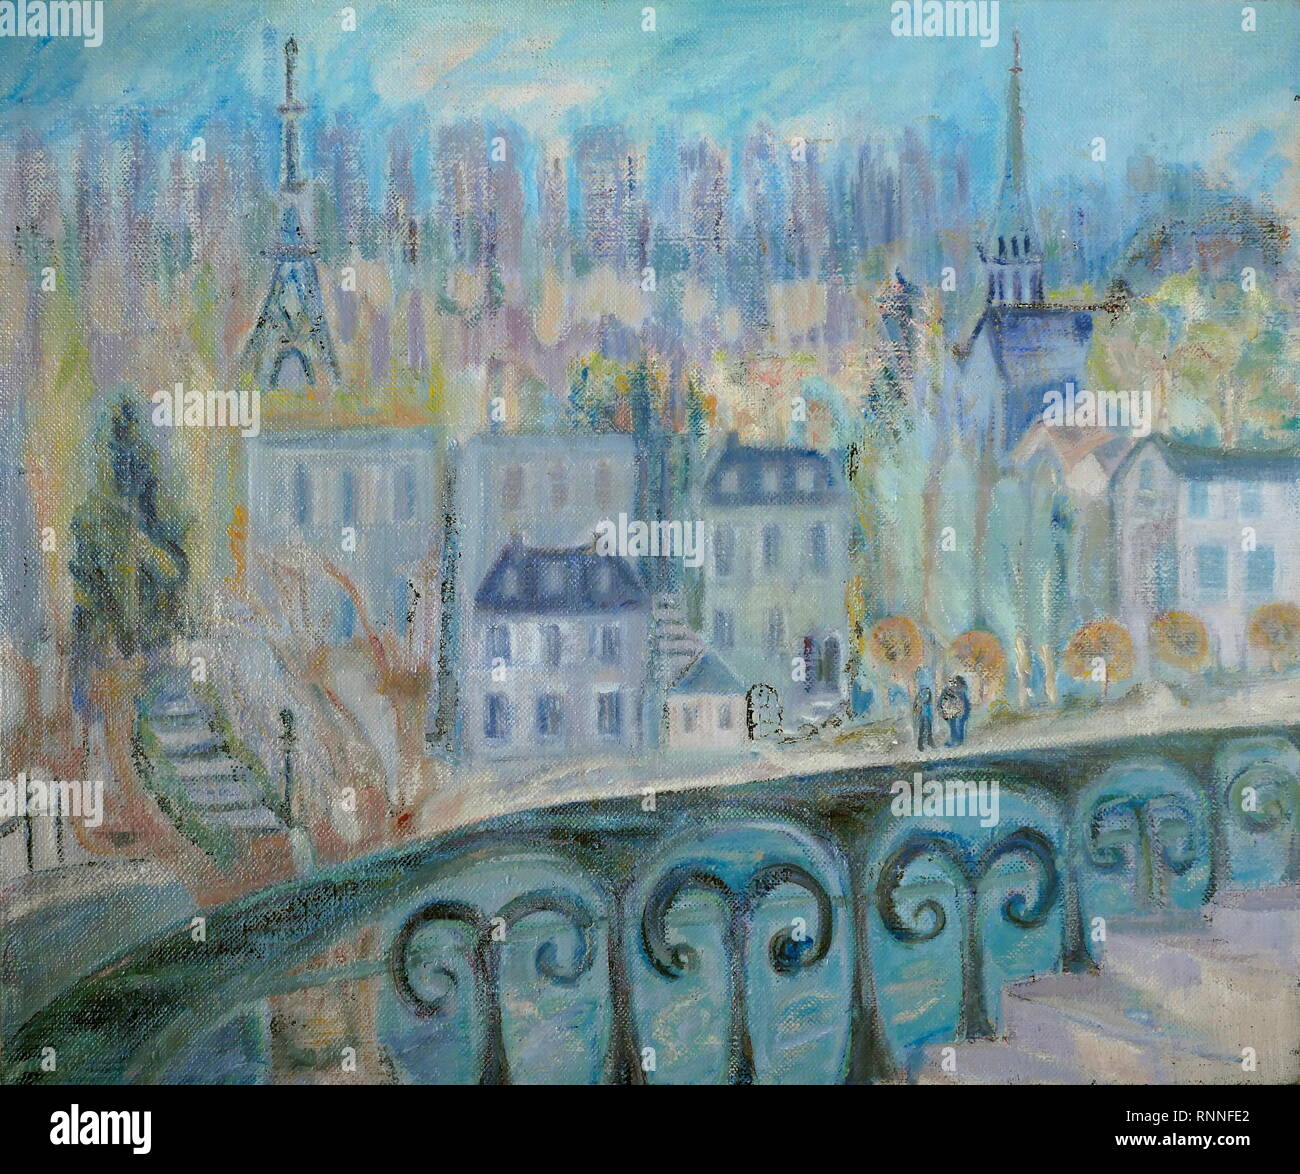 AJAXNETPHOTO. 2019. ENGLAND. T.G. Masaryk EASTLAND KUNST - ANSICHT VON PARIS SAINT CLOUD, FRANKREICH, gemalt von T.G.EASTLAND; große Öl auf Leinwand. 20. JAHRHUNDERT impressionistischen Stil arbeiten, datiert von 1984. Malerei UNSIGNED. Foto: © IN DIESEM DIGITALEN KOPIE DER URSPRÜNGLICHEN ARBEIT/AJAX NEWS & FEATURE SERVICE. Quelle: private Sammlung. REF: GX 191702 20011 Stockfoto